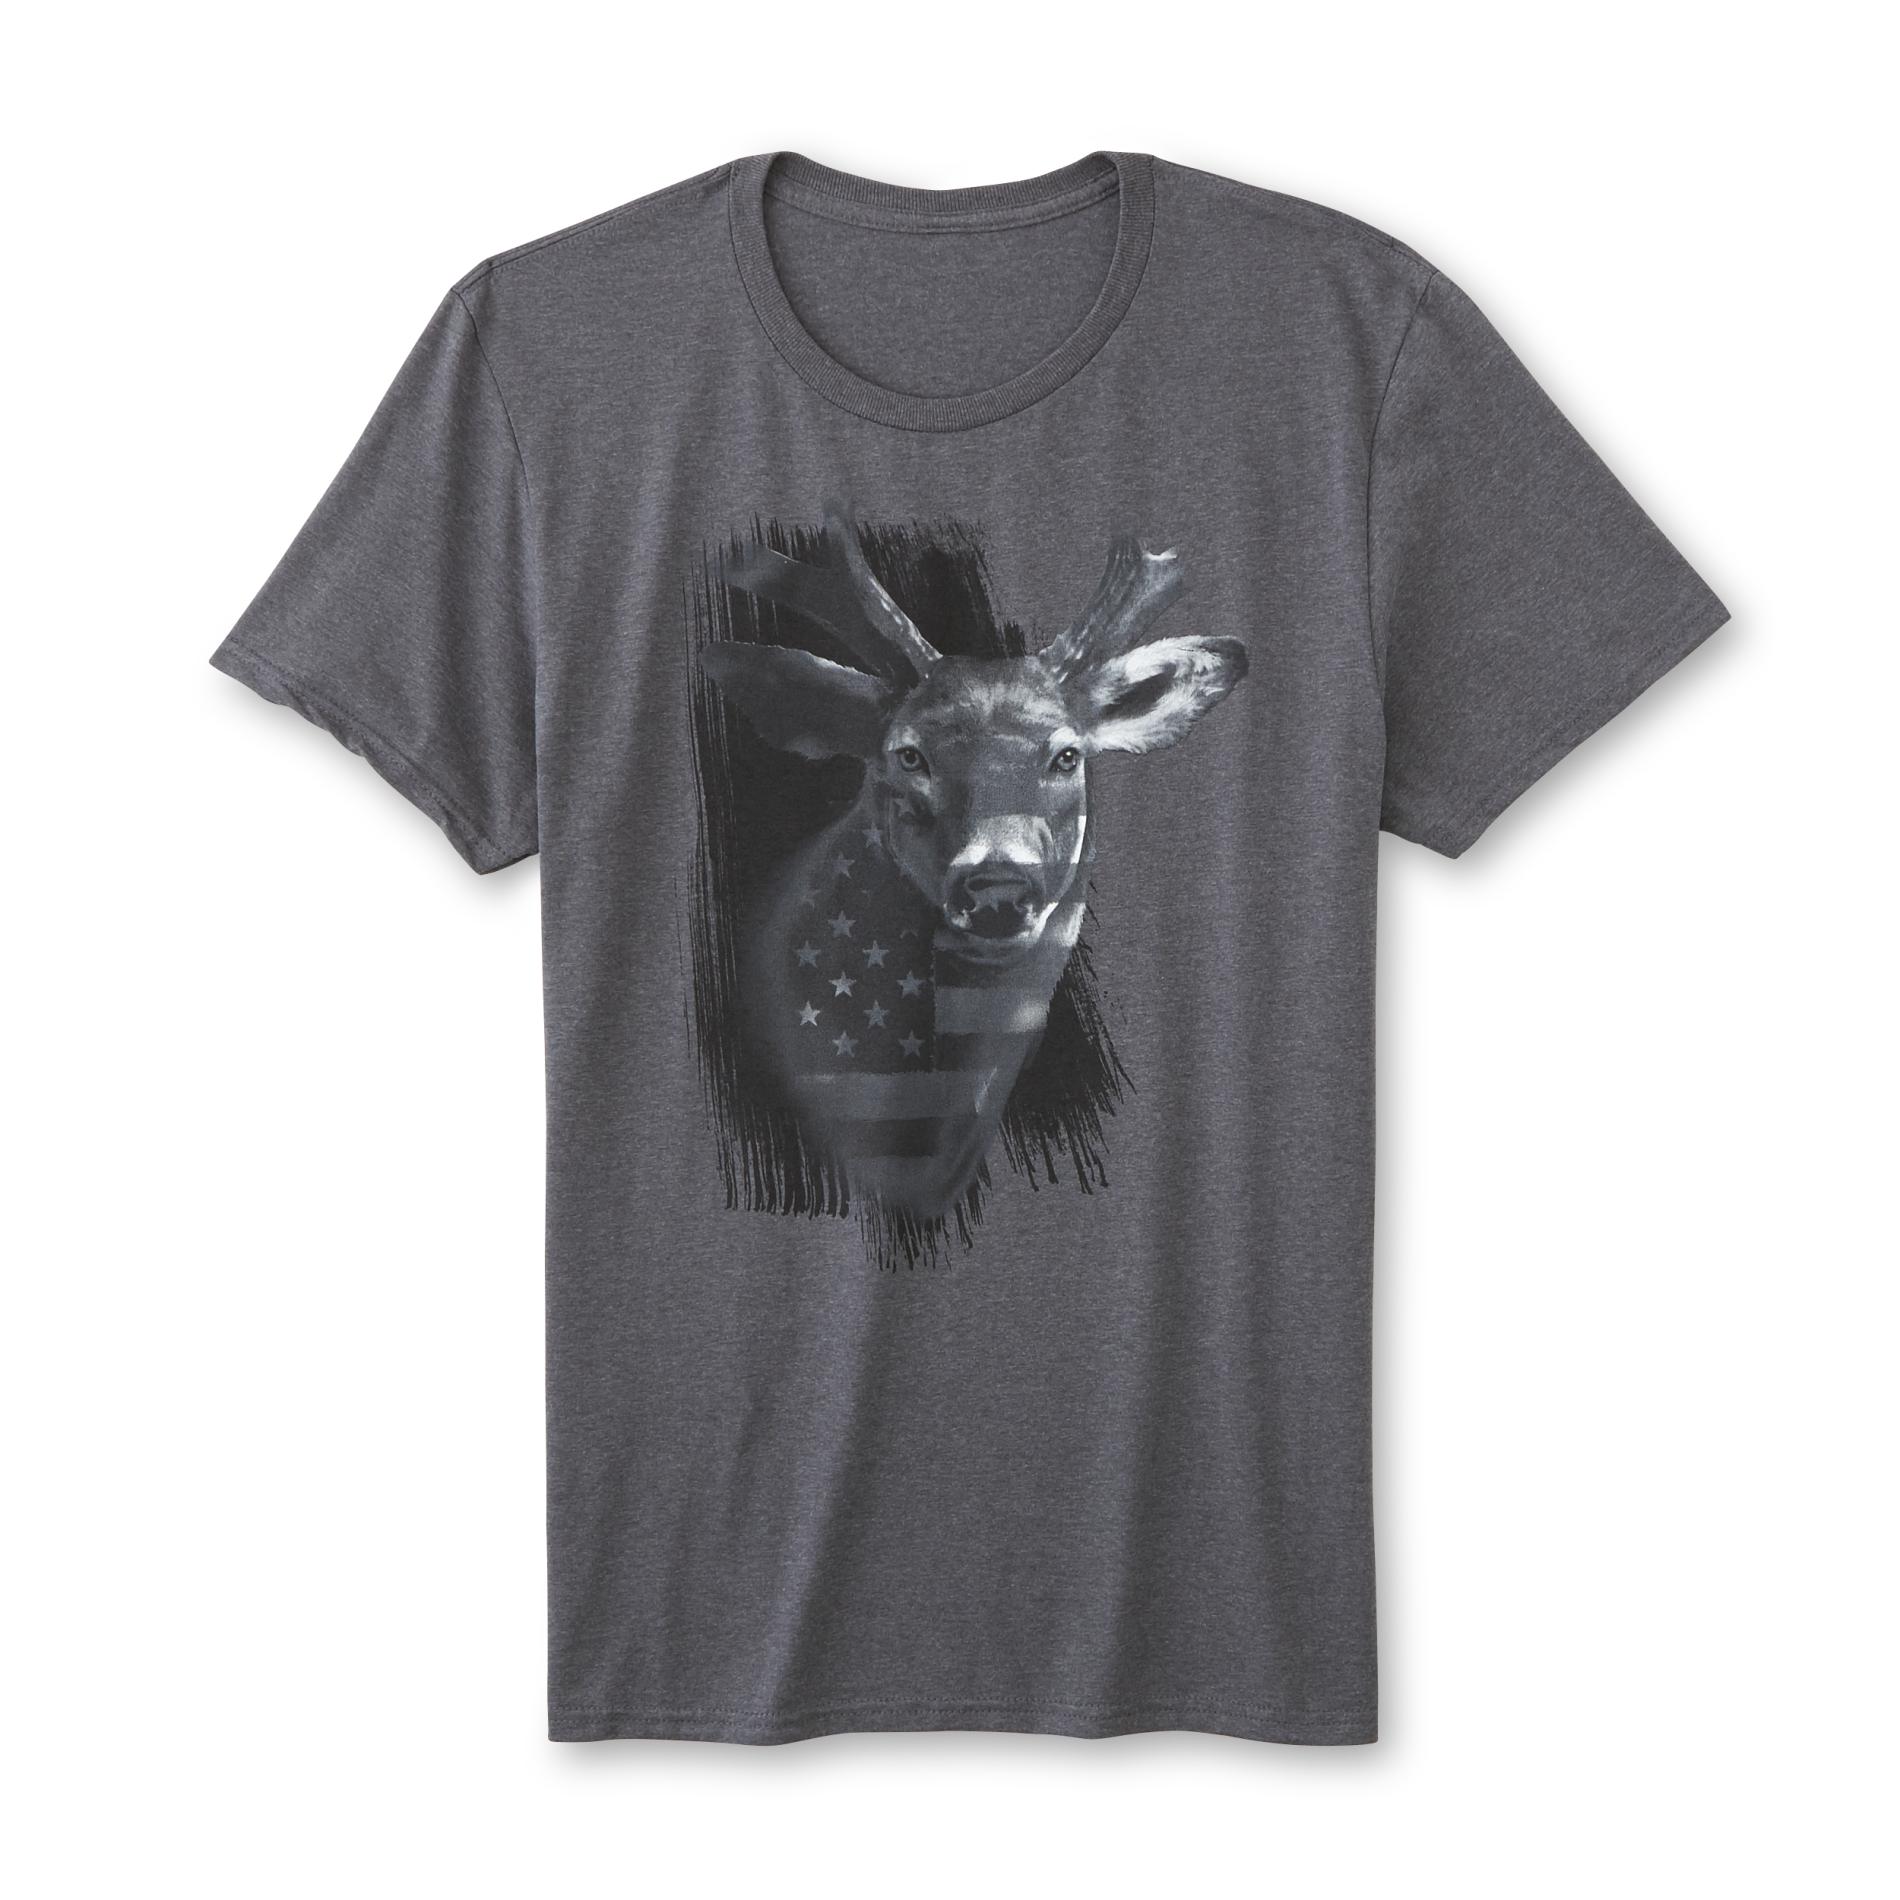 Men's Graphic T-Shirt - Deer